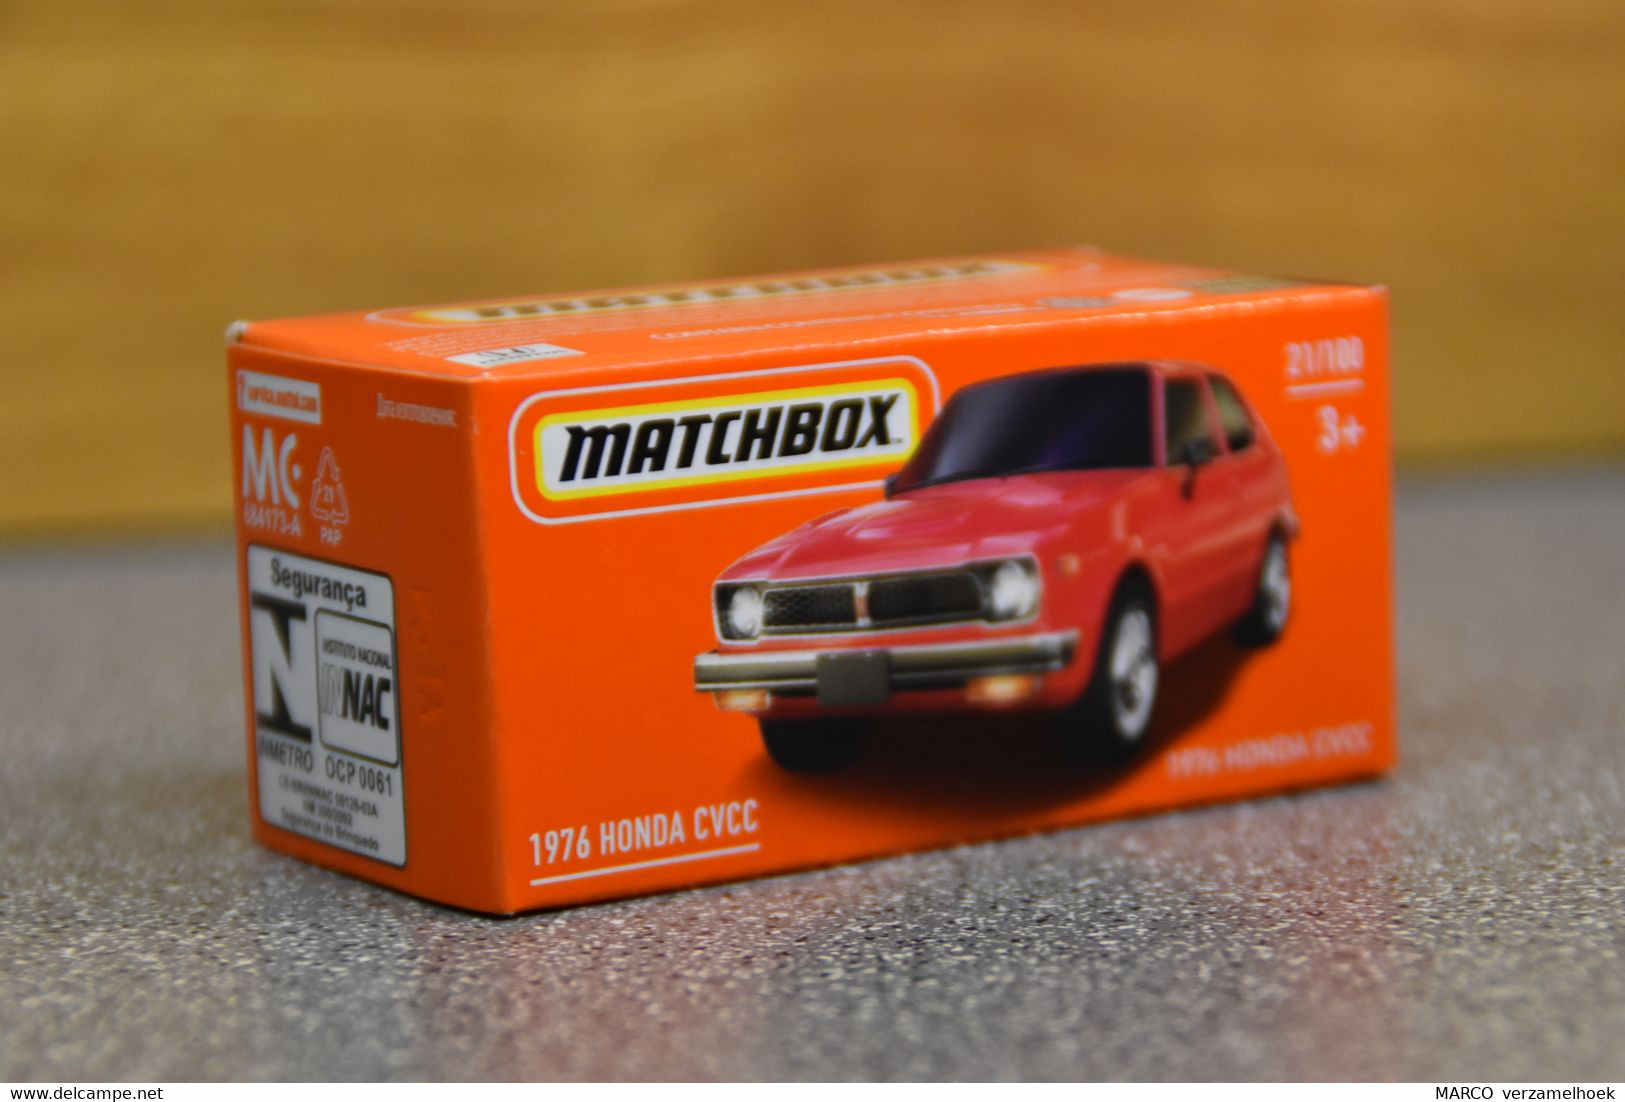 Mattel - Matchbox 21/100 1976 Honda Civic - Matchbox (Mattel)